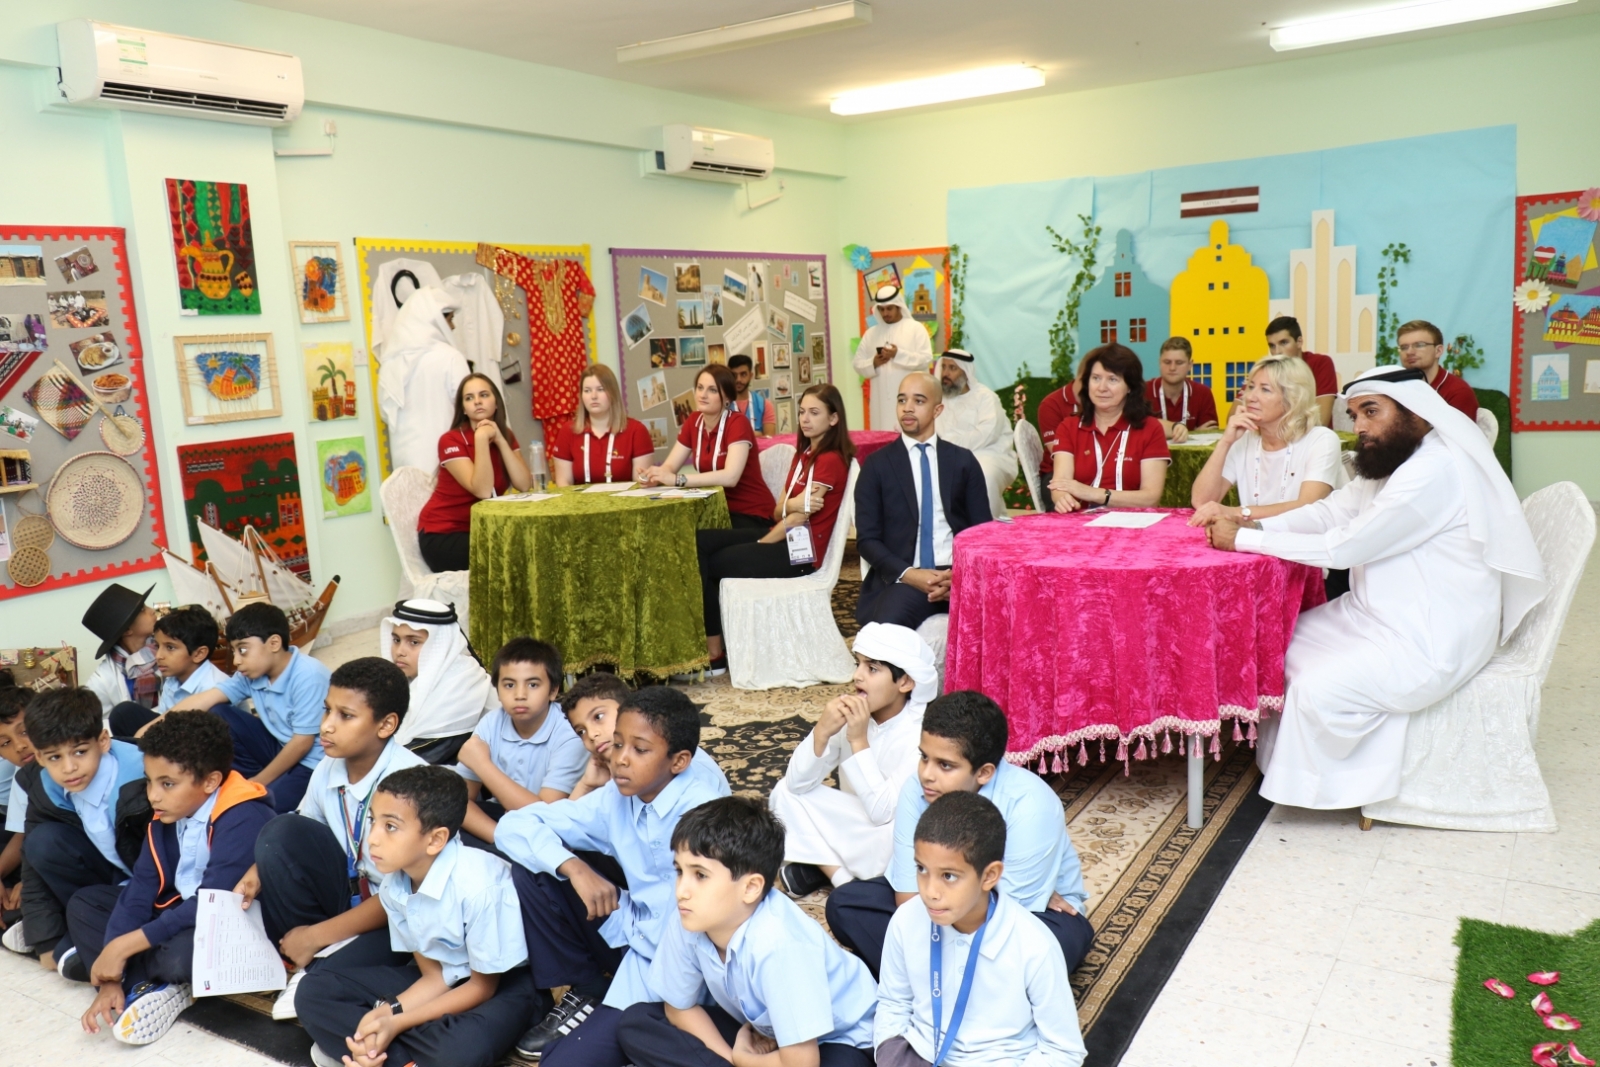 Latvijas komanda viesojas Apvienoto Arābu Emirātu skolā